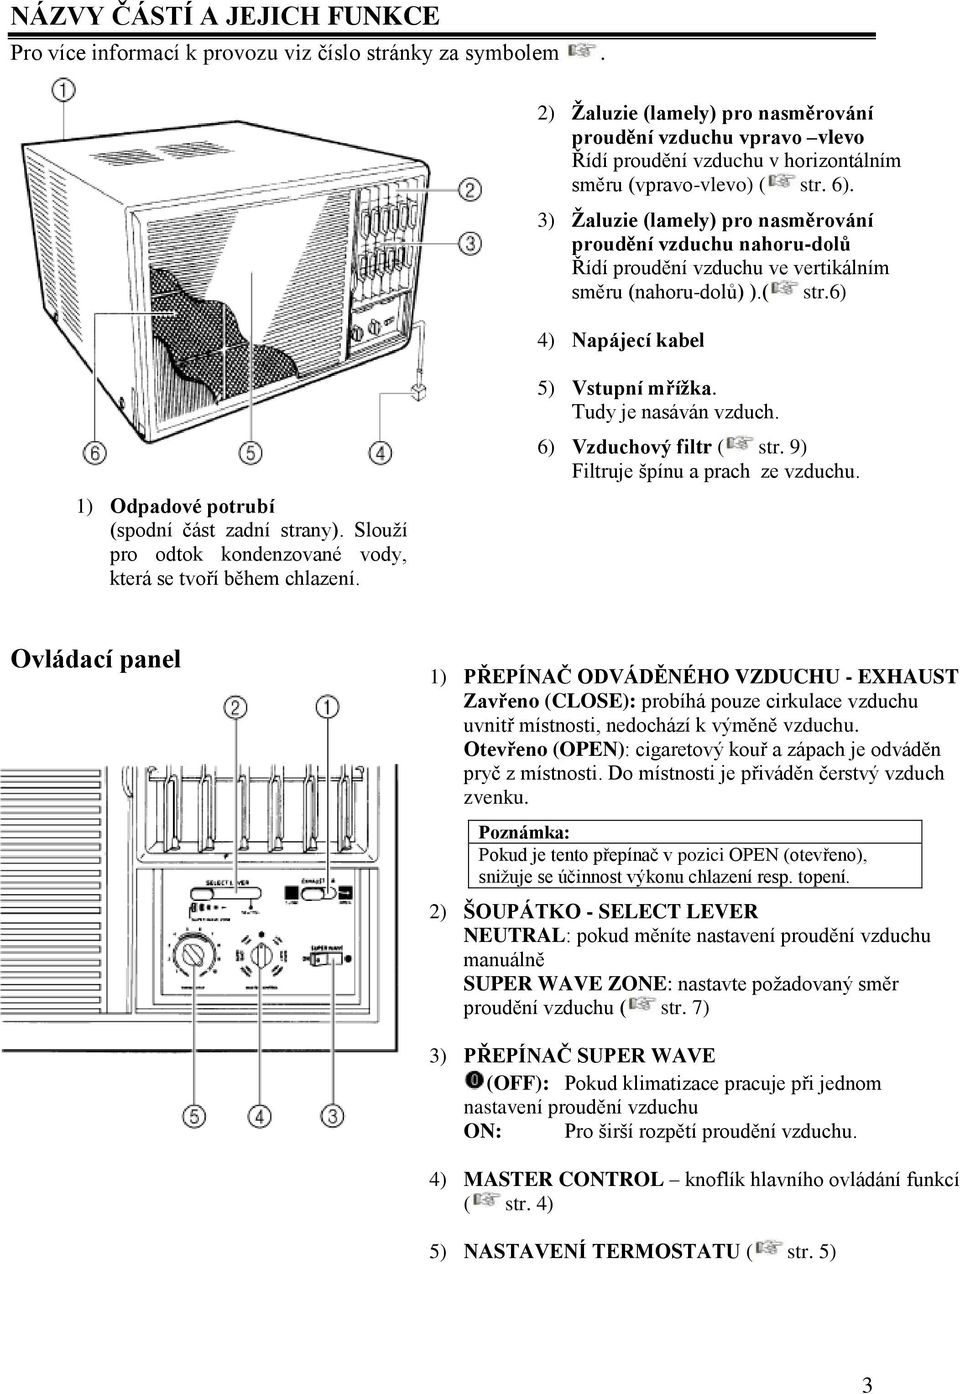 3) Žaluzie (lamely) pro nasměrování proudění vzduchu nahoru-dolů Řídí proudění vzduchu ve vertikálním směru (nahoru-dolů) ).( str.6) 4) Napájecí kabel 1) Odpadové potrubí (spodní část zadní strany).